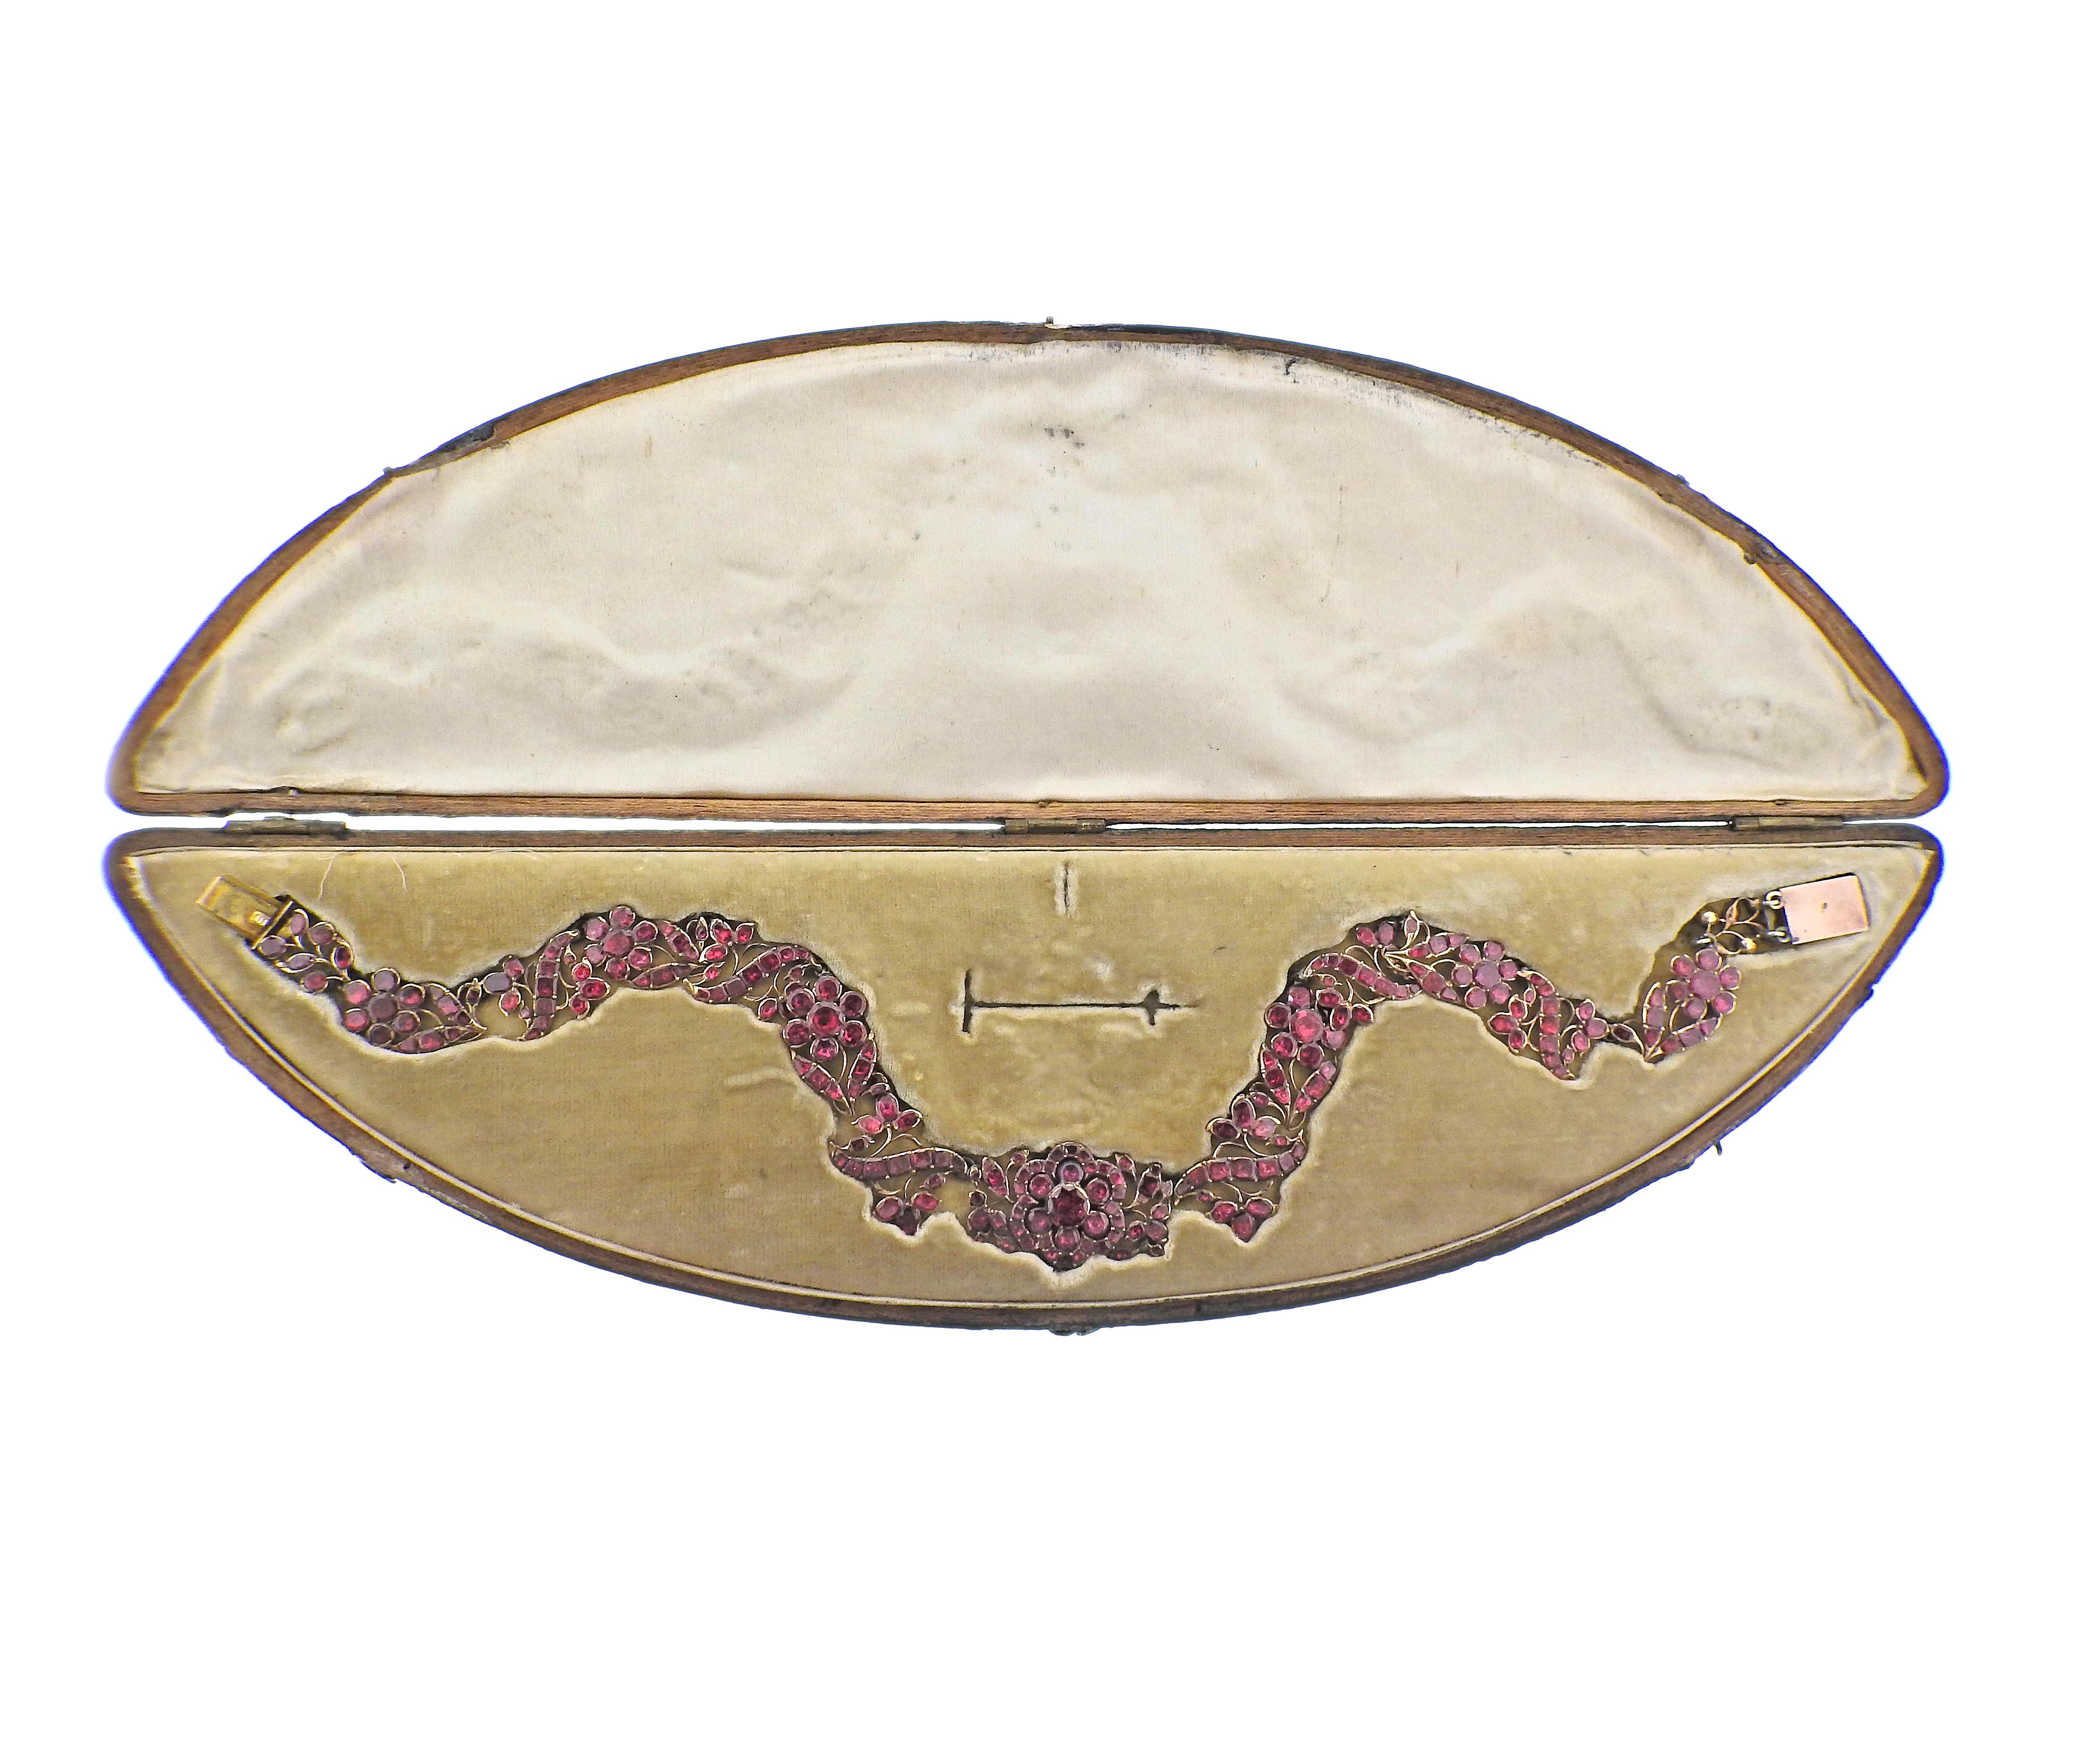 Collier ancien de style victorien avec des grenats de Bohème, livré dans sa boîte d'origine. Le collier mesure 14,5